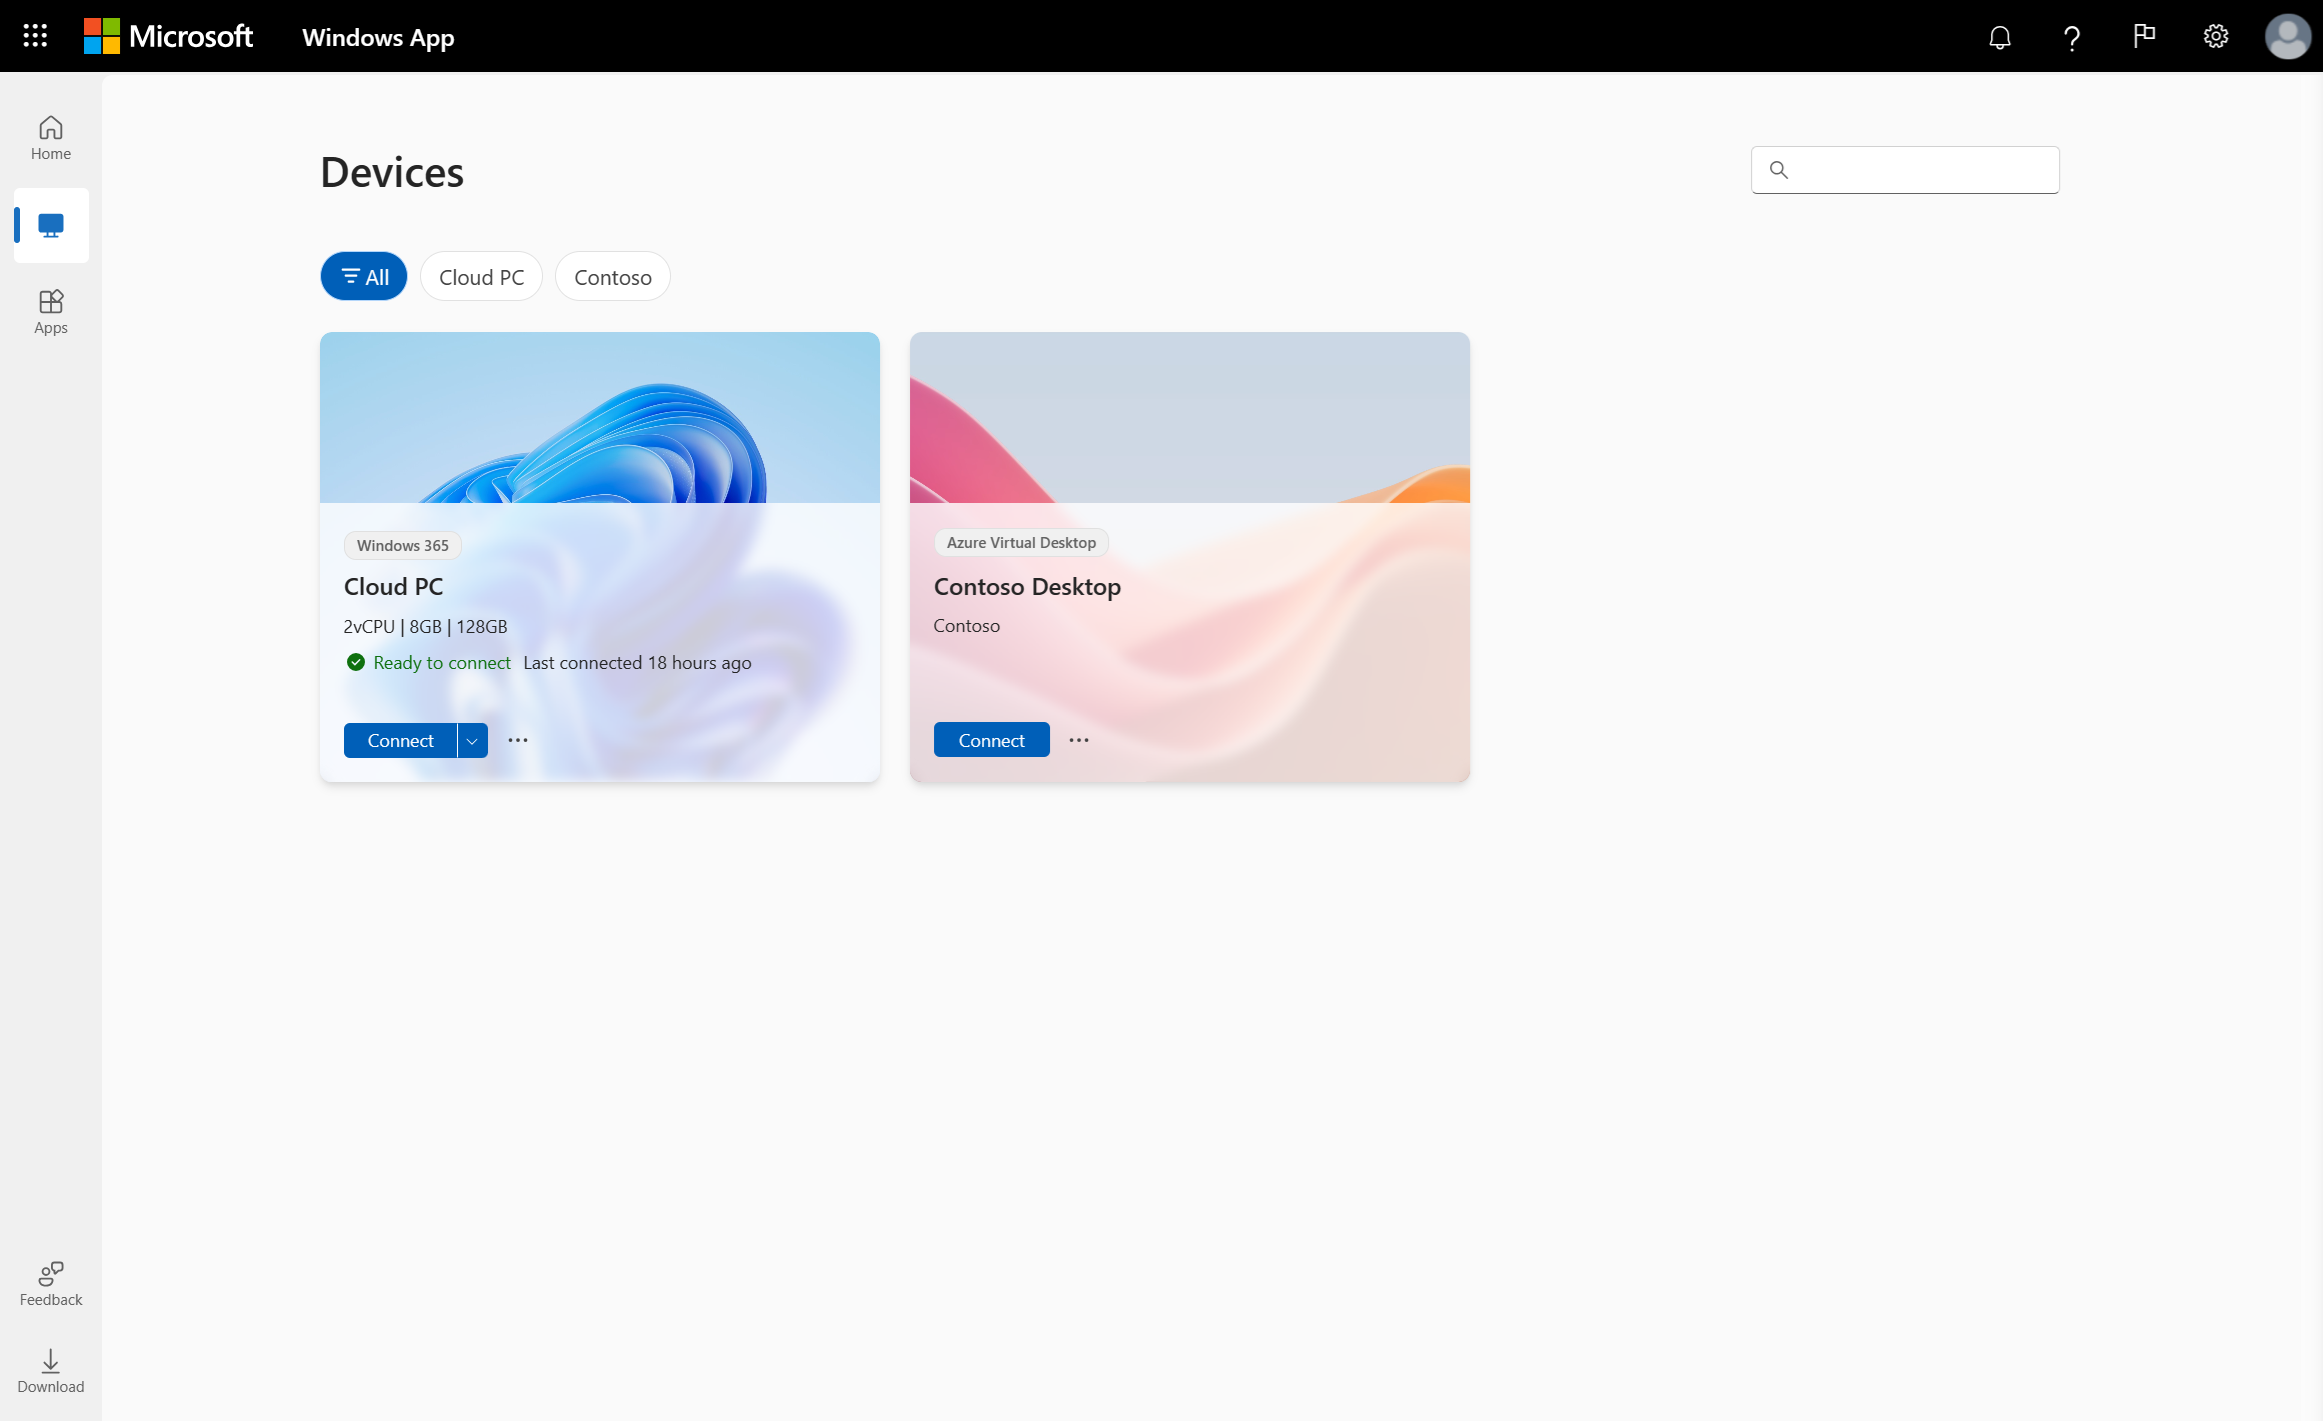 لقطة شاشة تعرض علامة تبويب الأجهزة لتطبيق Windows في مستعرض ويب باستخدام Azure Virtual Desktop.